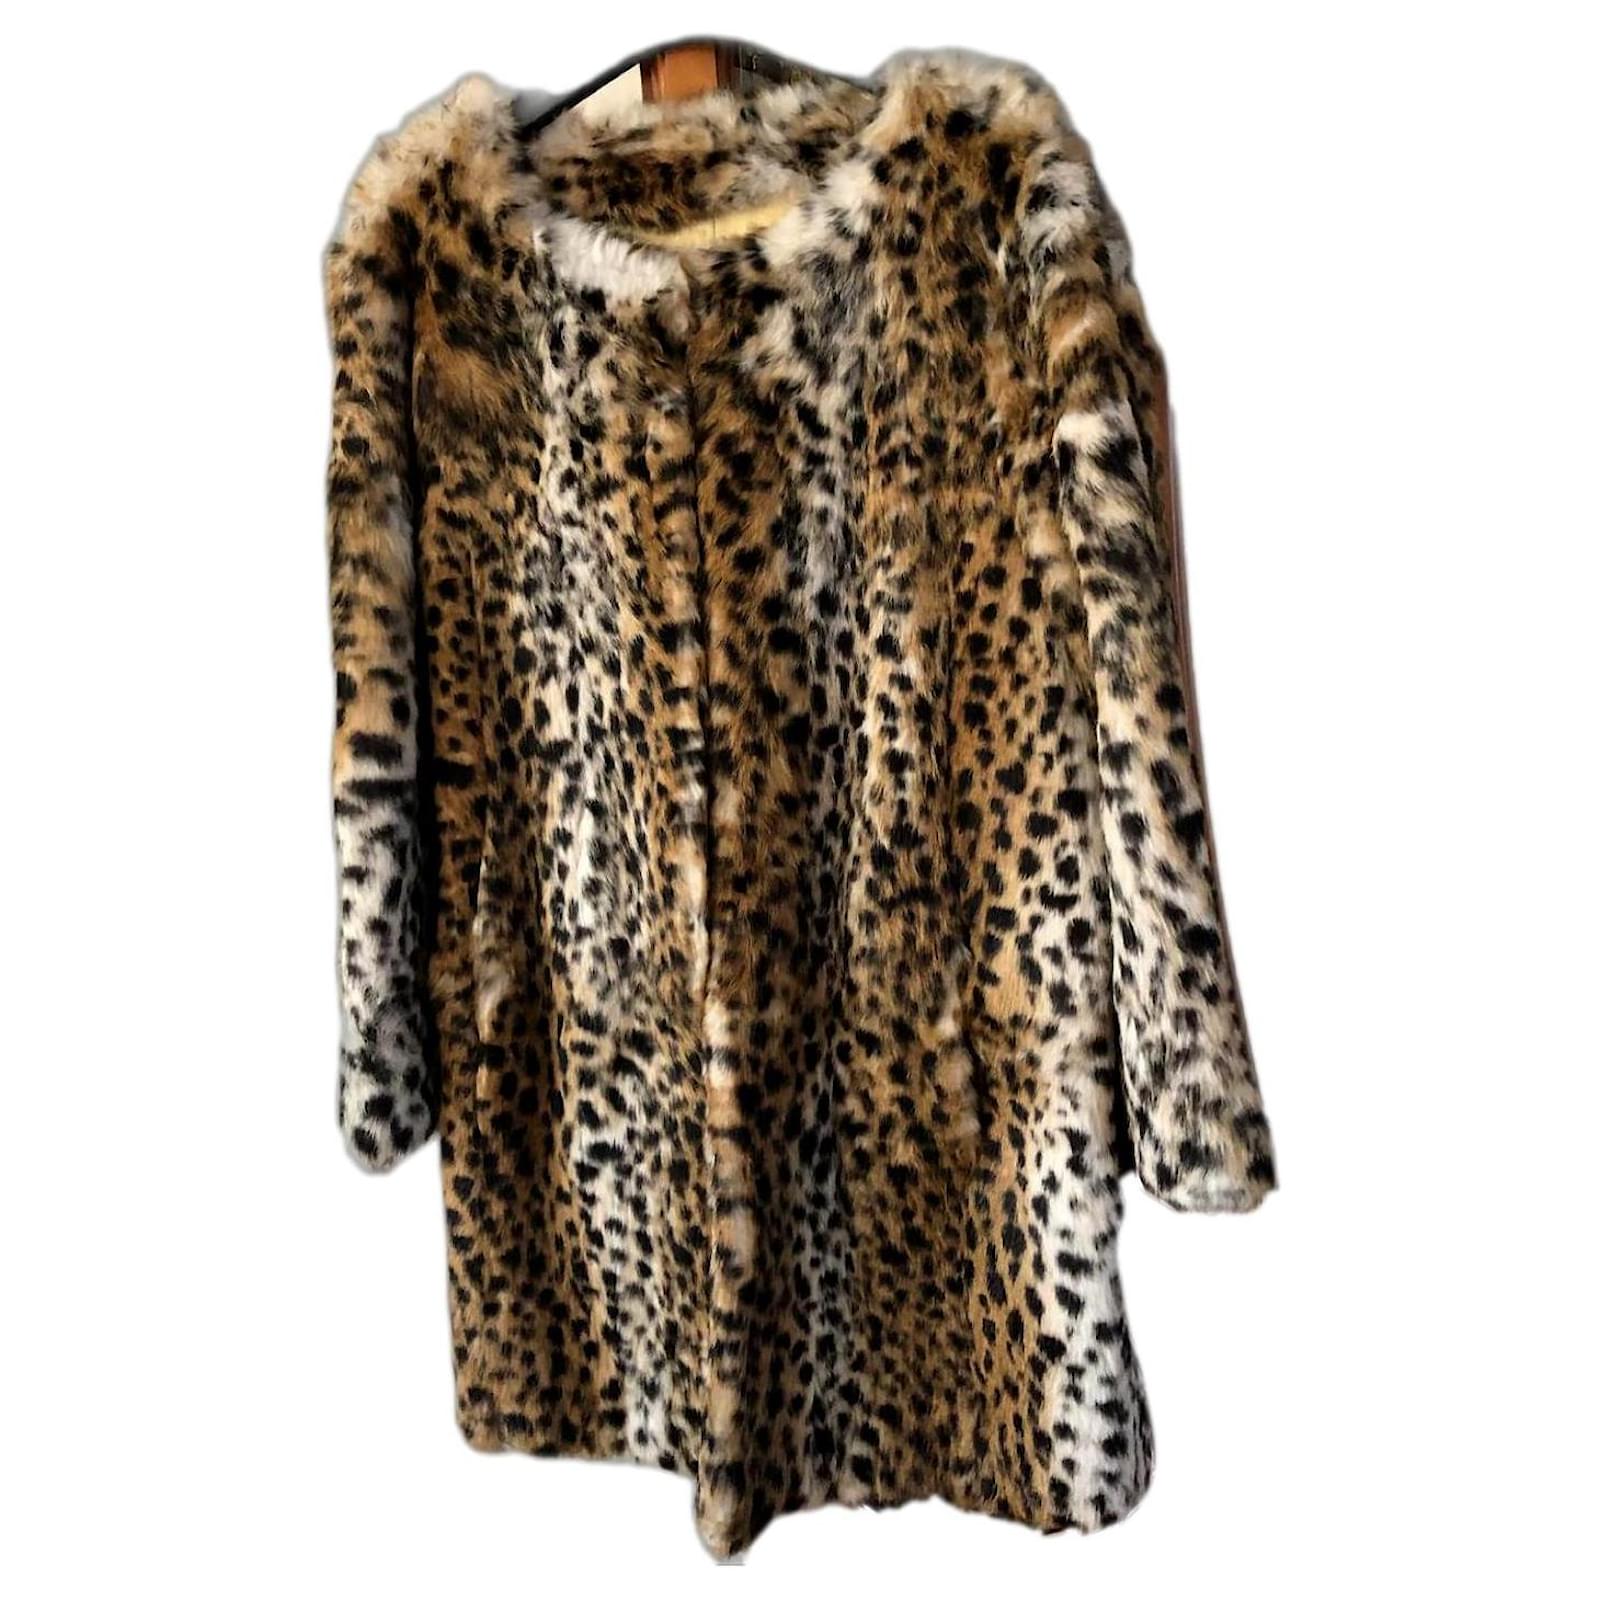 manteau leopard gerard darel